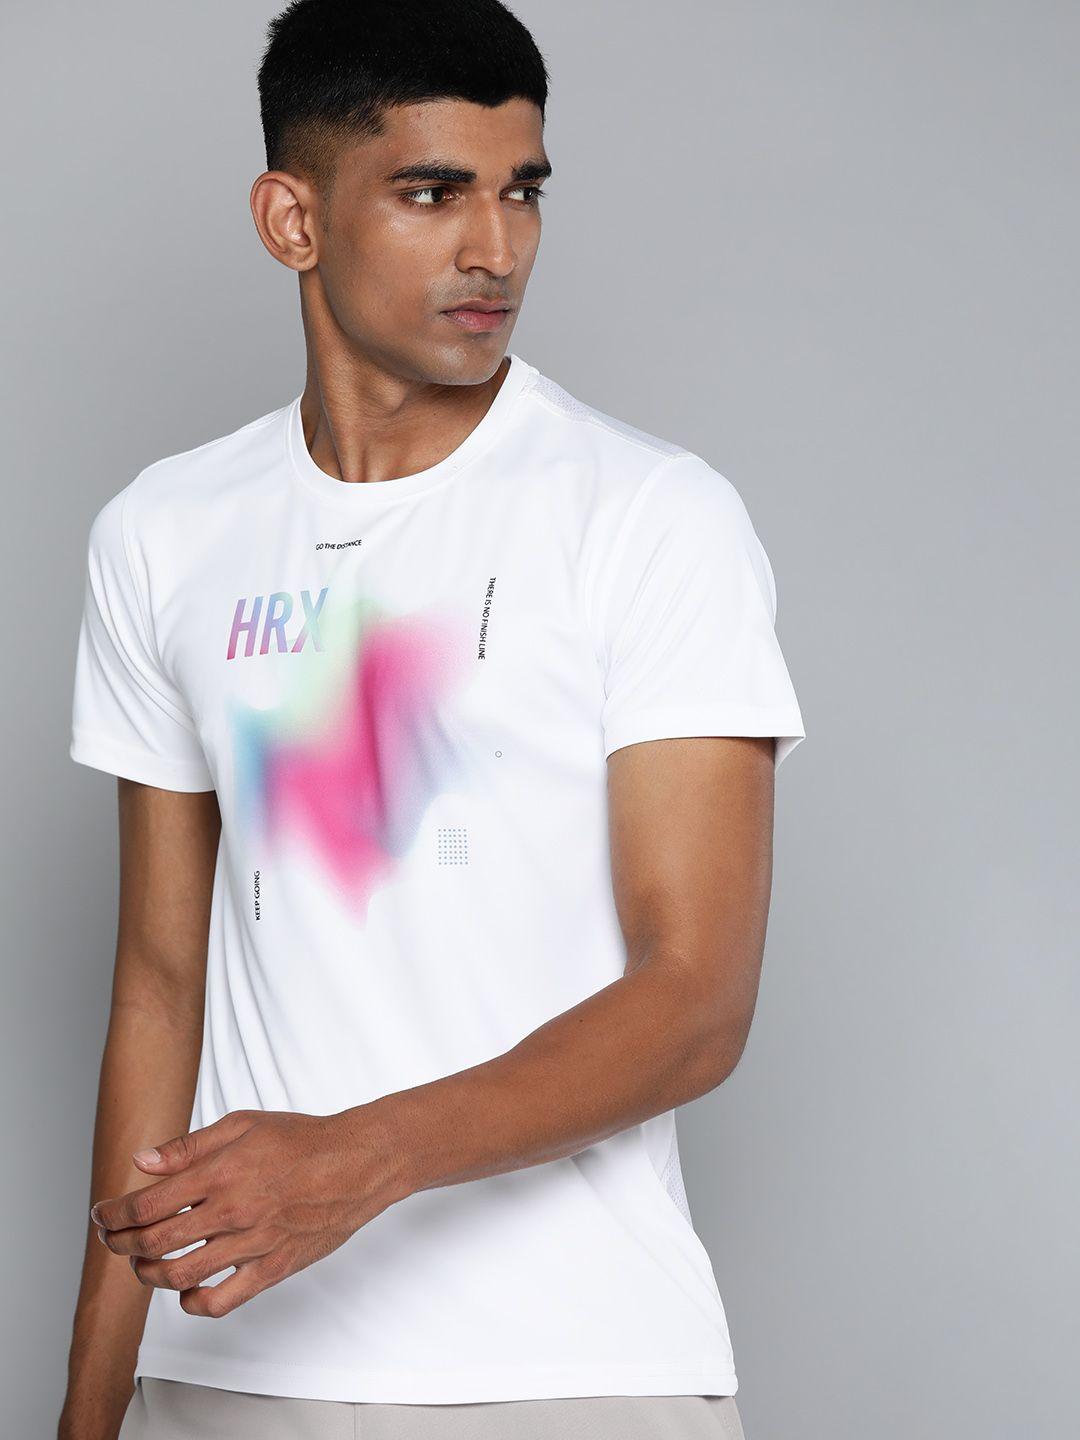 hrx by hrithik roshan running men rapid-dry brand carrier t-shirts